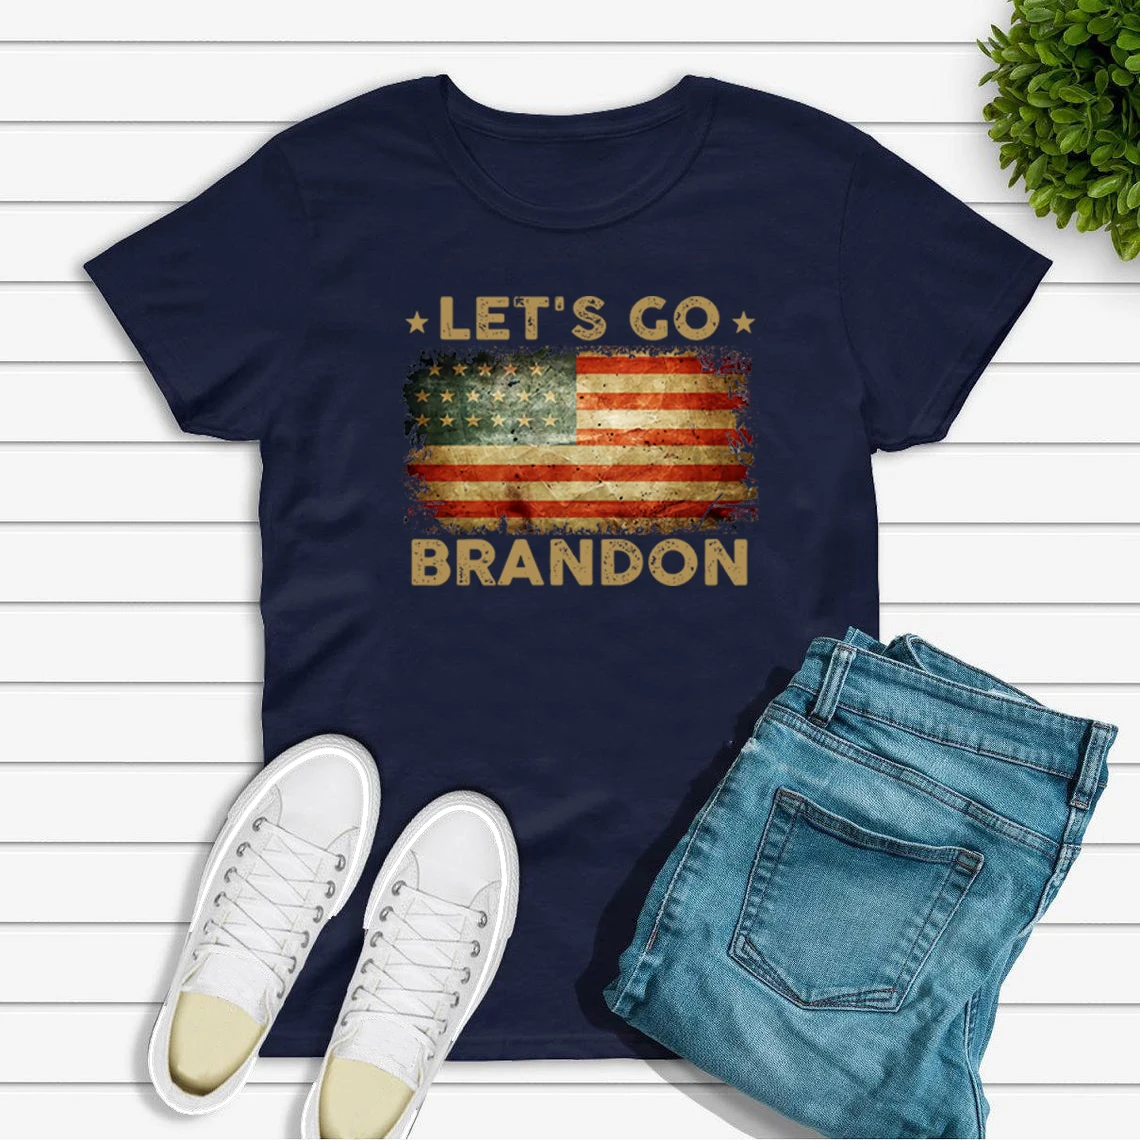 

Футболка с американским флагом Let's Go, Брэндон, забавная рубашка Джо биден, Женская Мужская футболка с коротким рукавом, винтажная графическа...